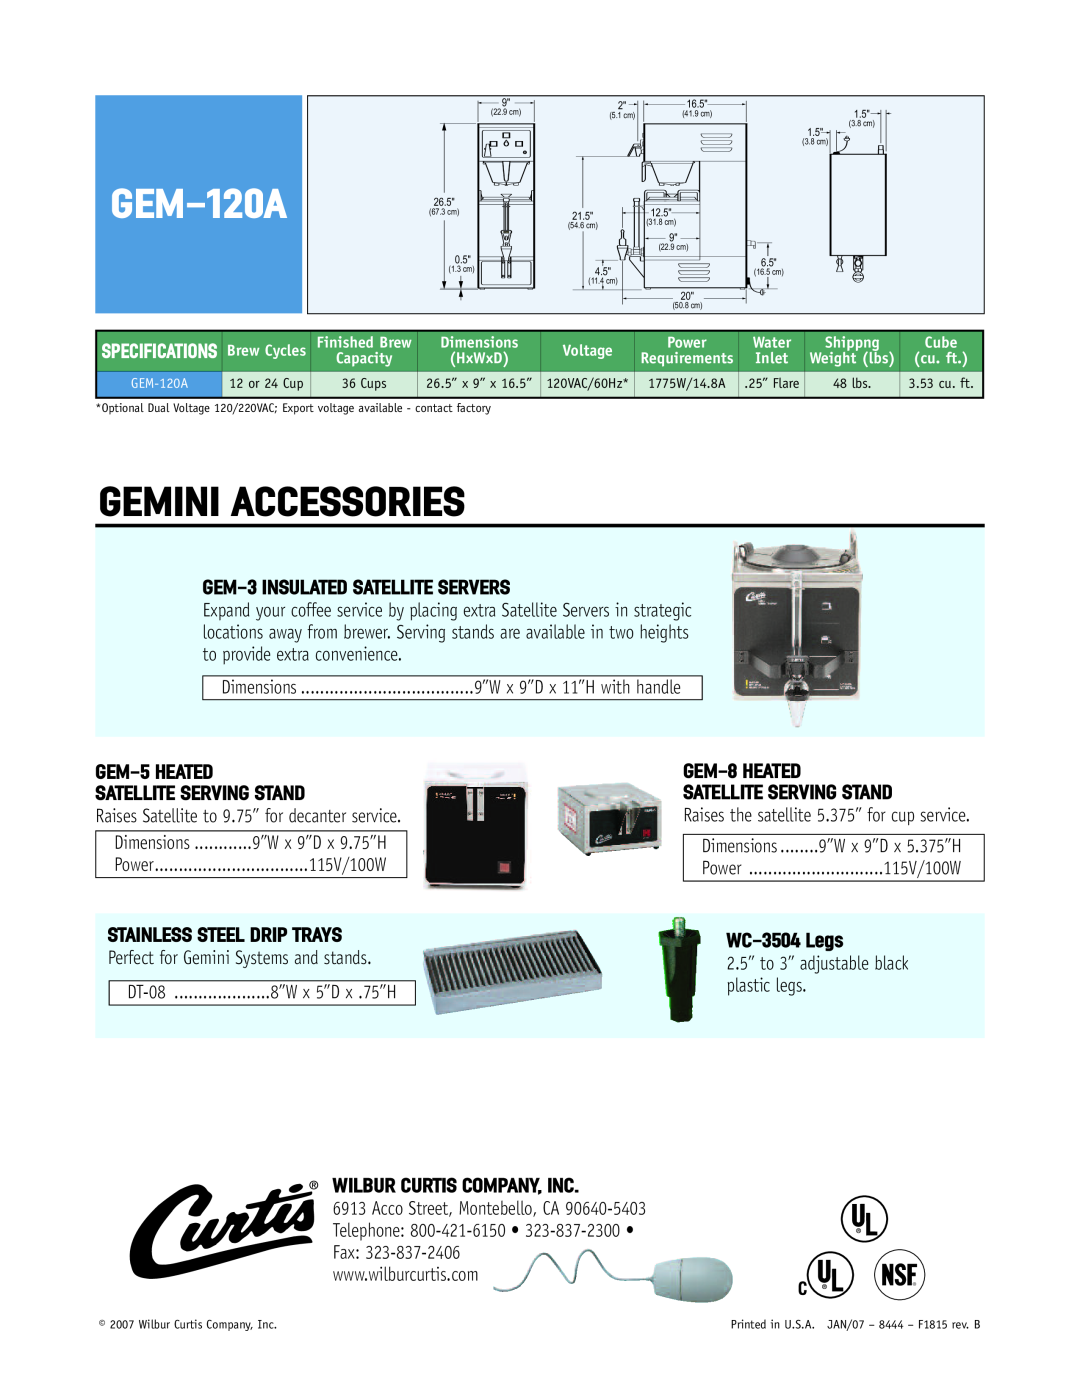 Wibur Curtis Company GEM-120A Gemini Accessories, GEM-3 INSULATED SATELLITE SERVERS, GEM-5 HEATED SATELLITE SERVING STAND 